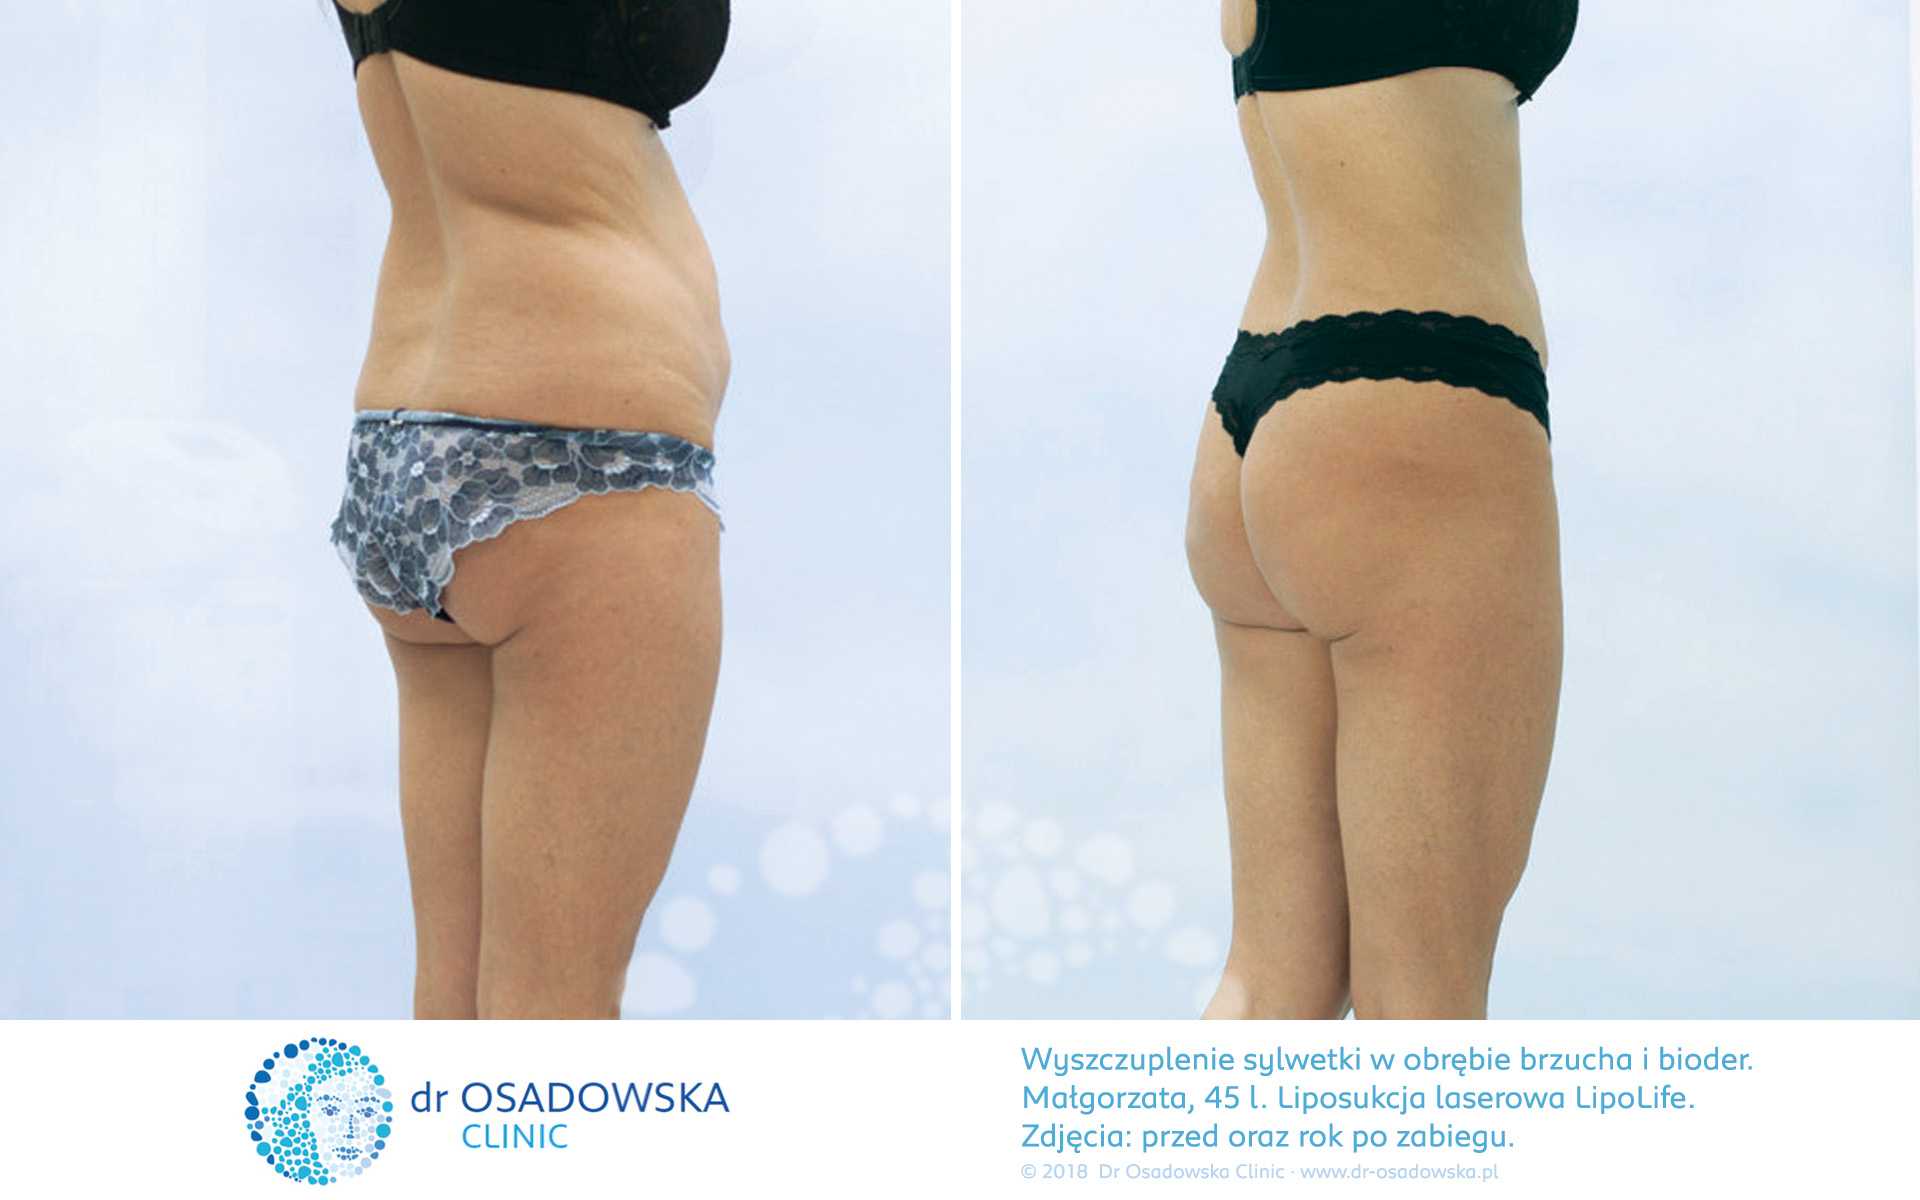 Liposukcja bioder i brzucha, zdjęcia efekty przed i rok po zabiegu Lipolife, Dr Ilona Osadowska